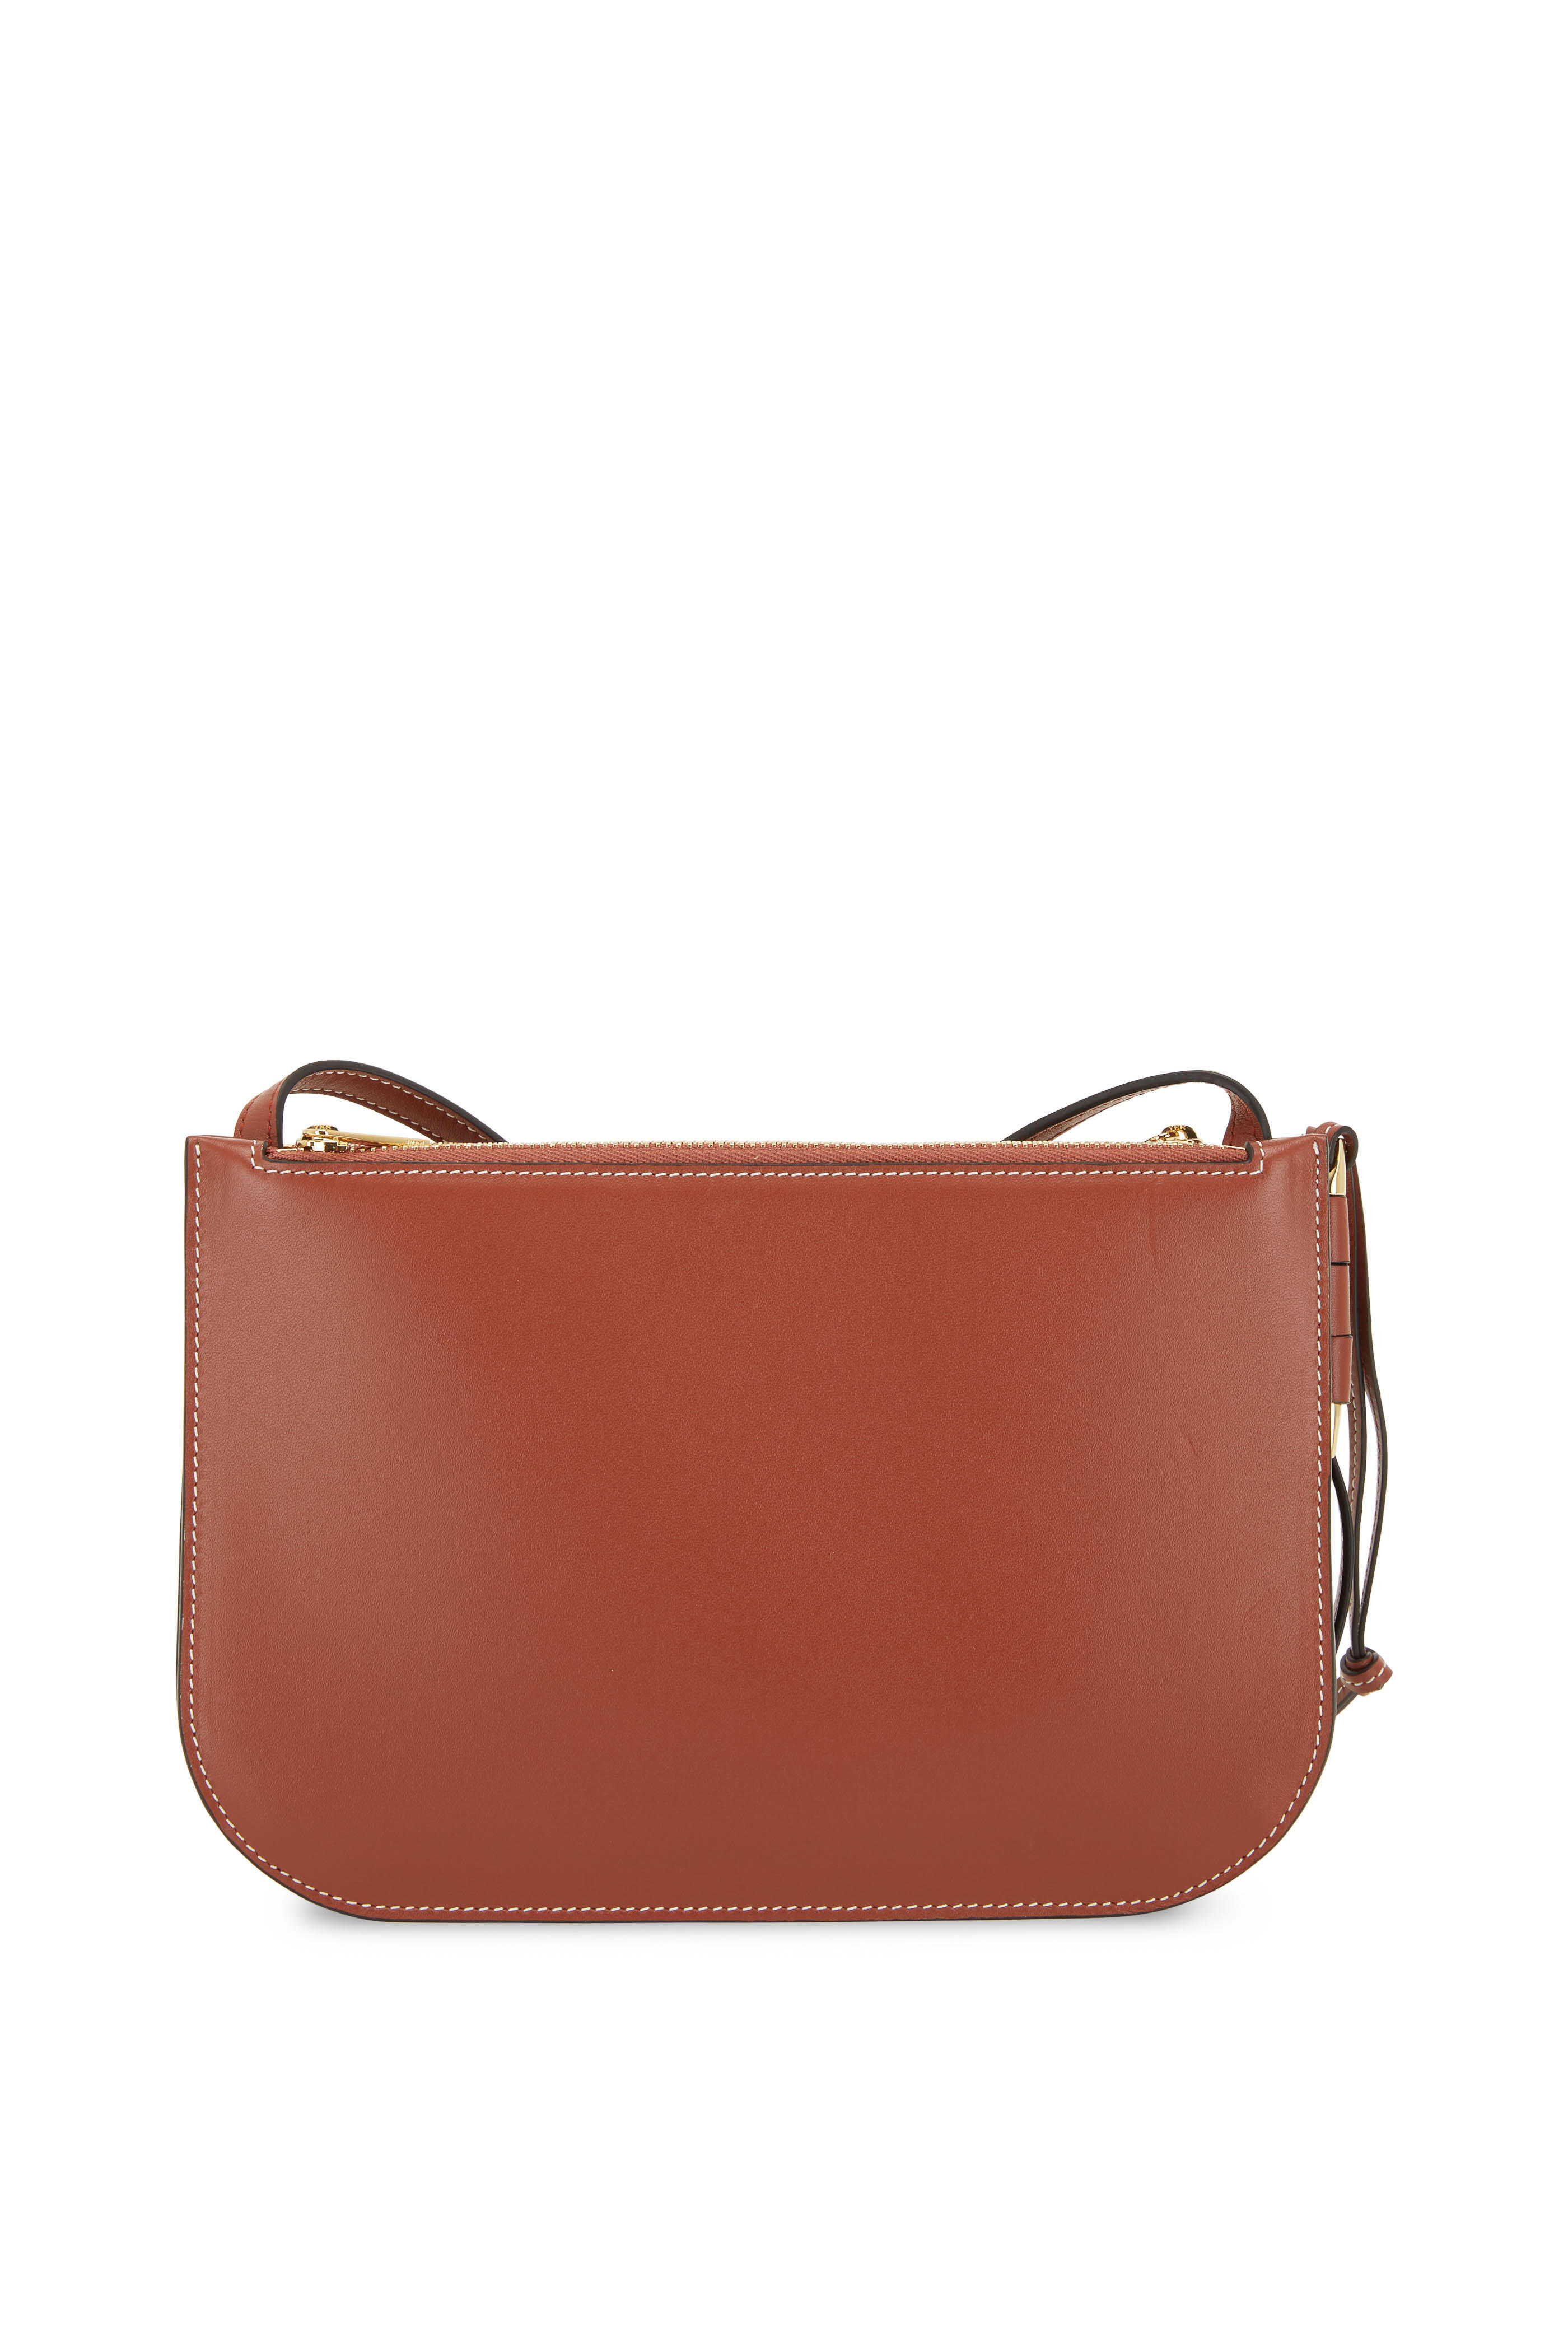 Loewe Gate Pocket Leather Shoulder Bag In Rust Color